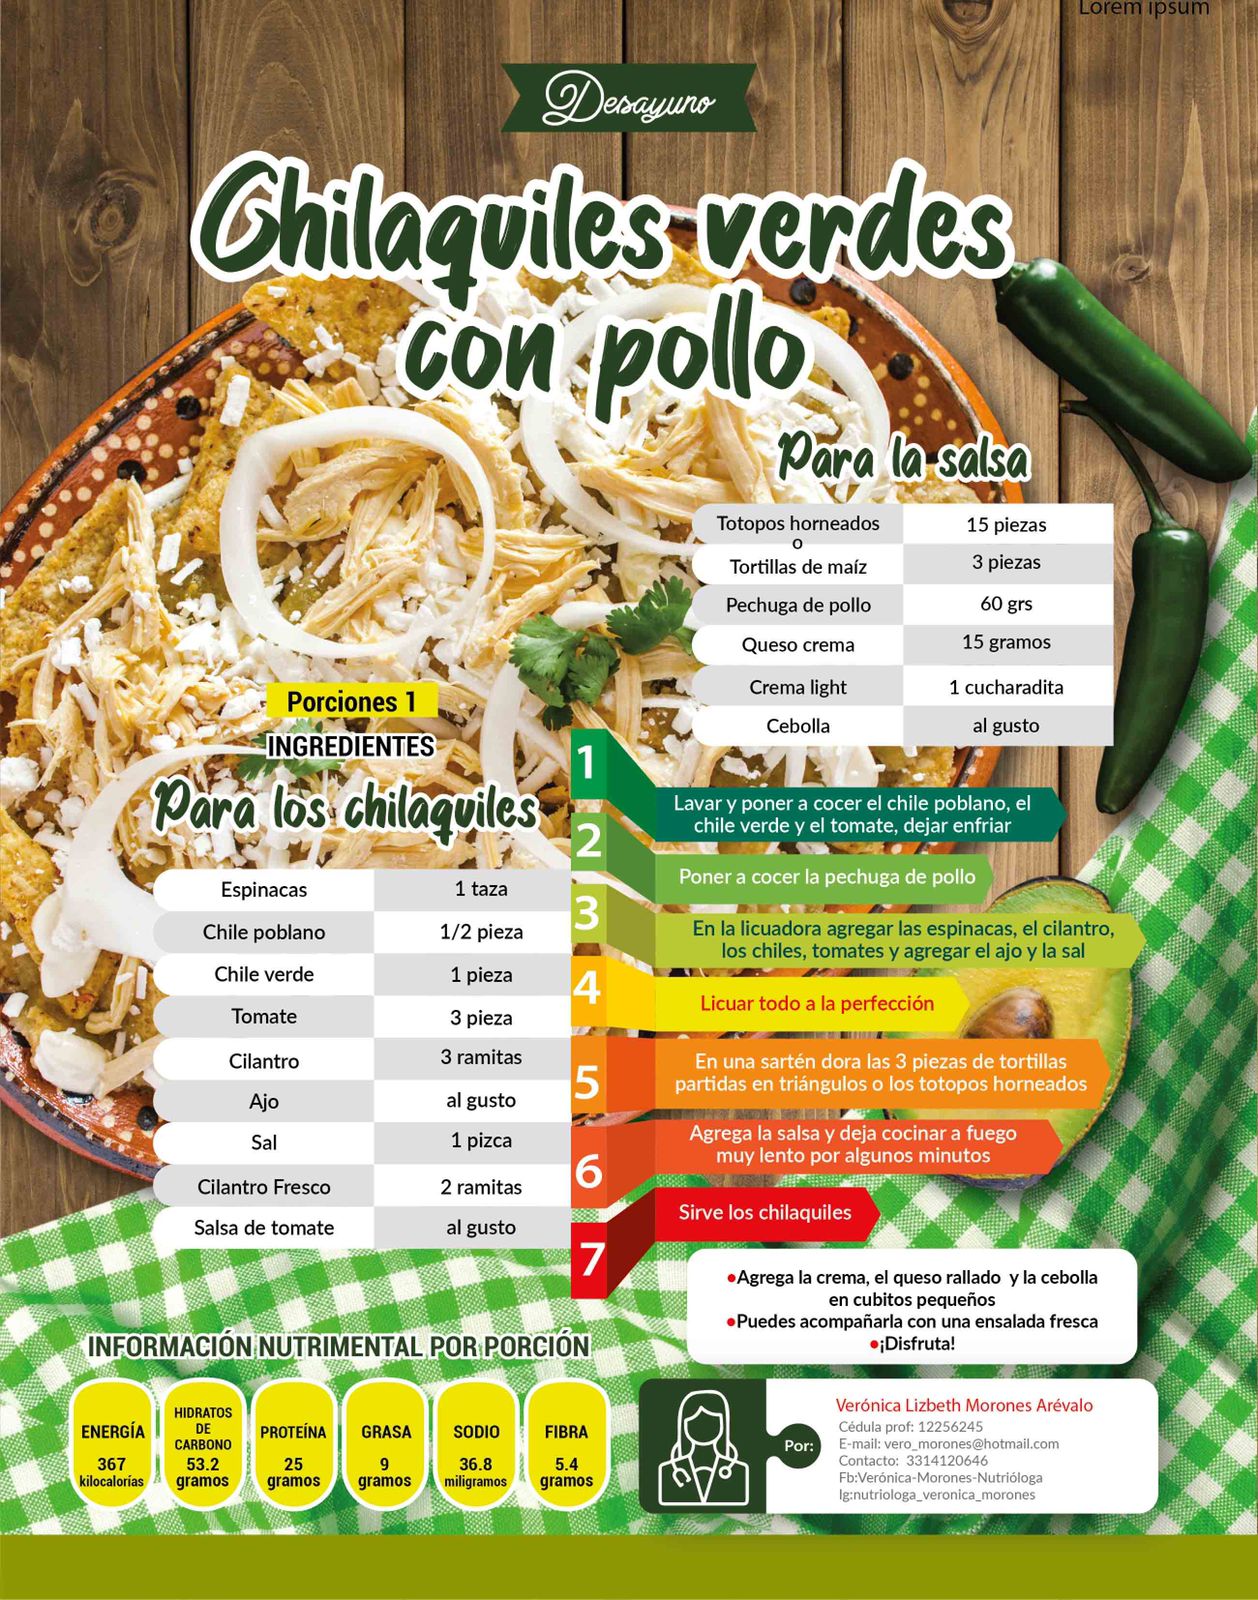 Chilaquiles verdes con pollo - Revista Diabetes Hoy